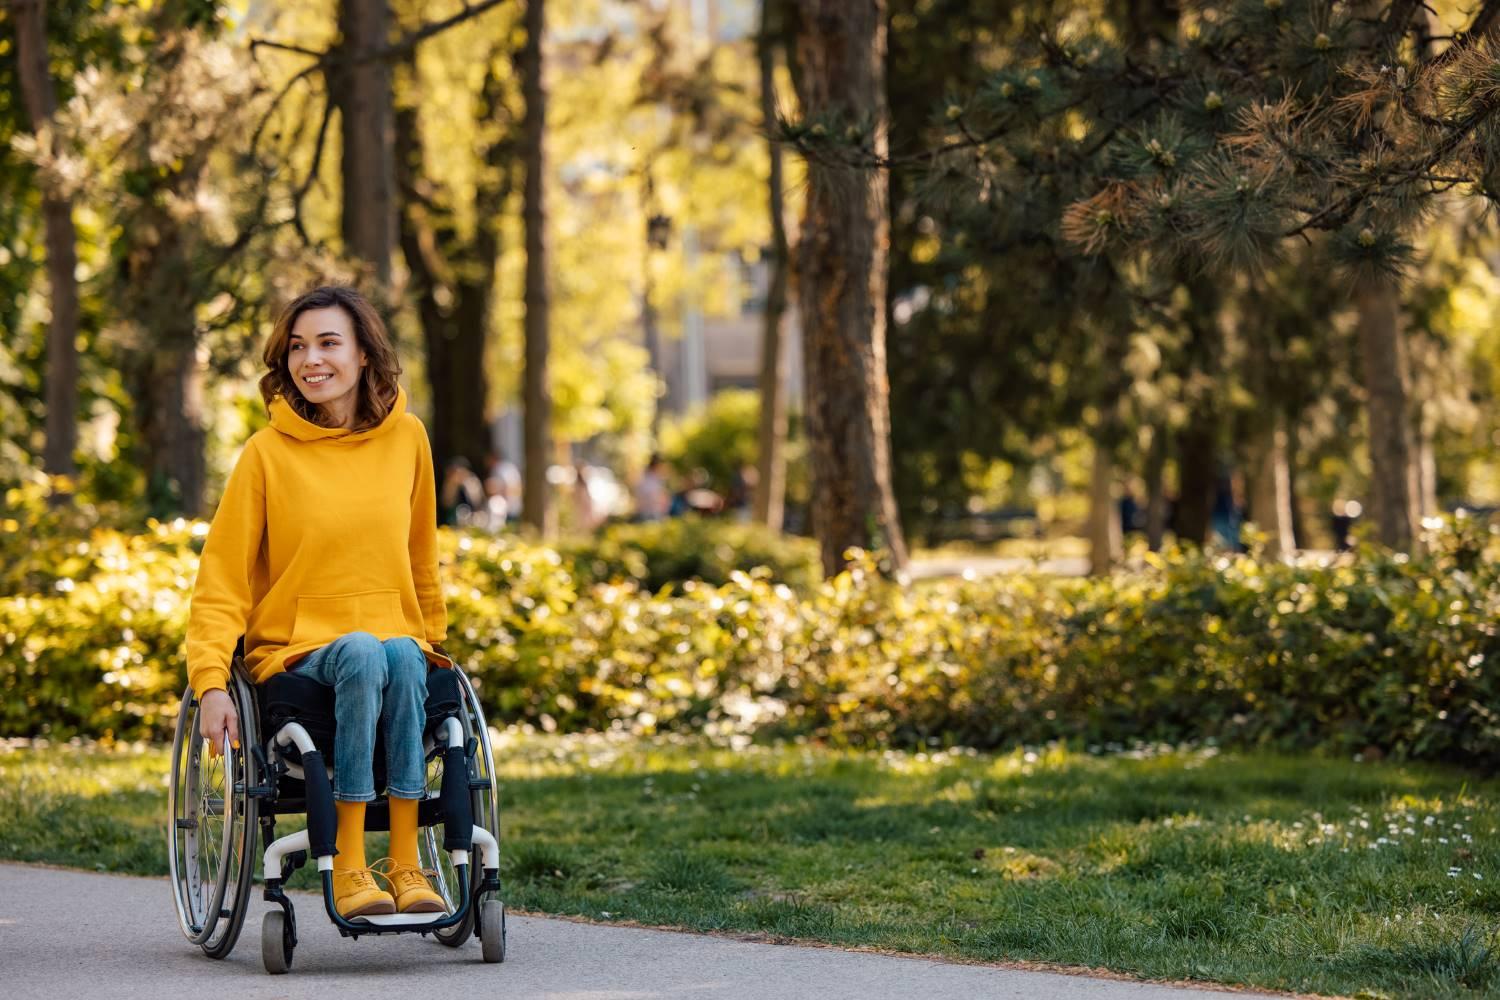 Rollstühle: Junge Frau fährt im Rollstuhl durch den sonnigen Park.